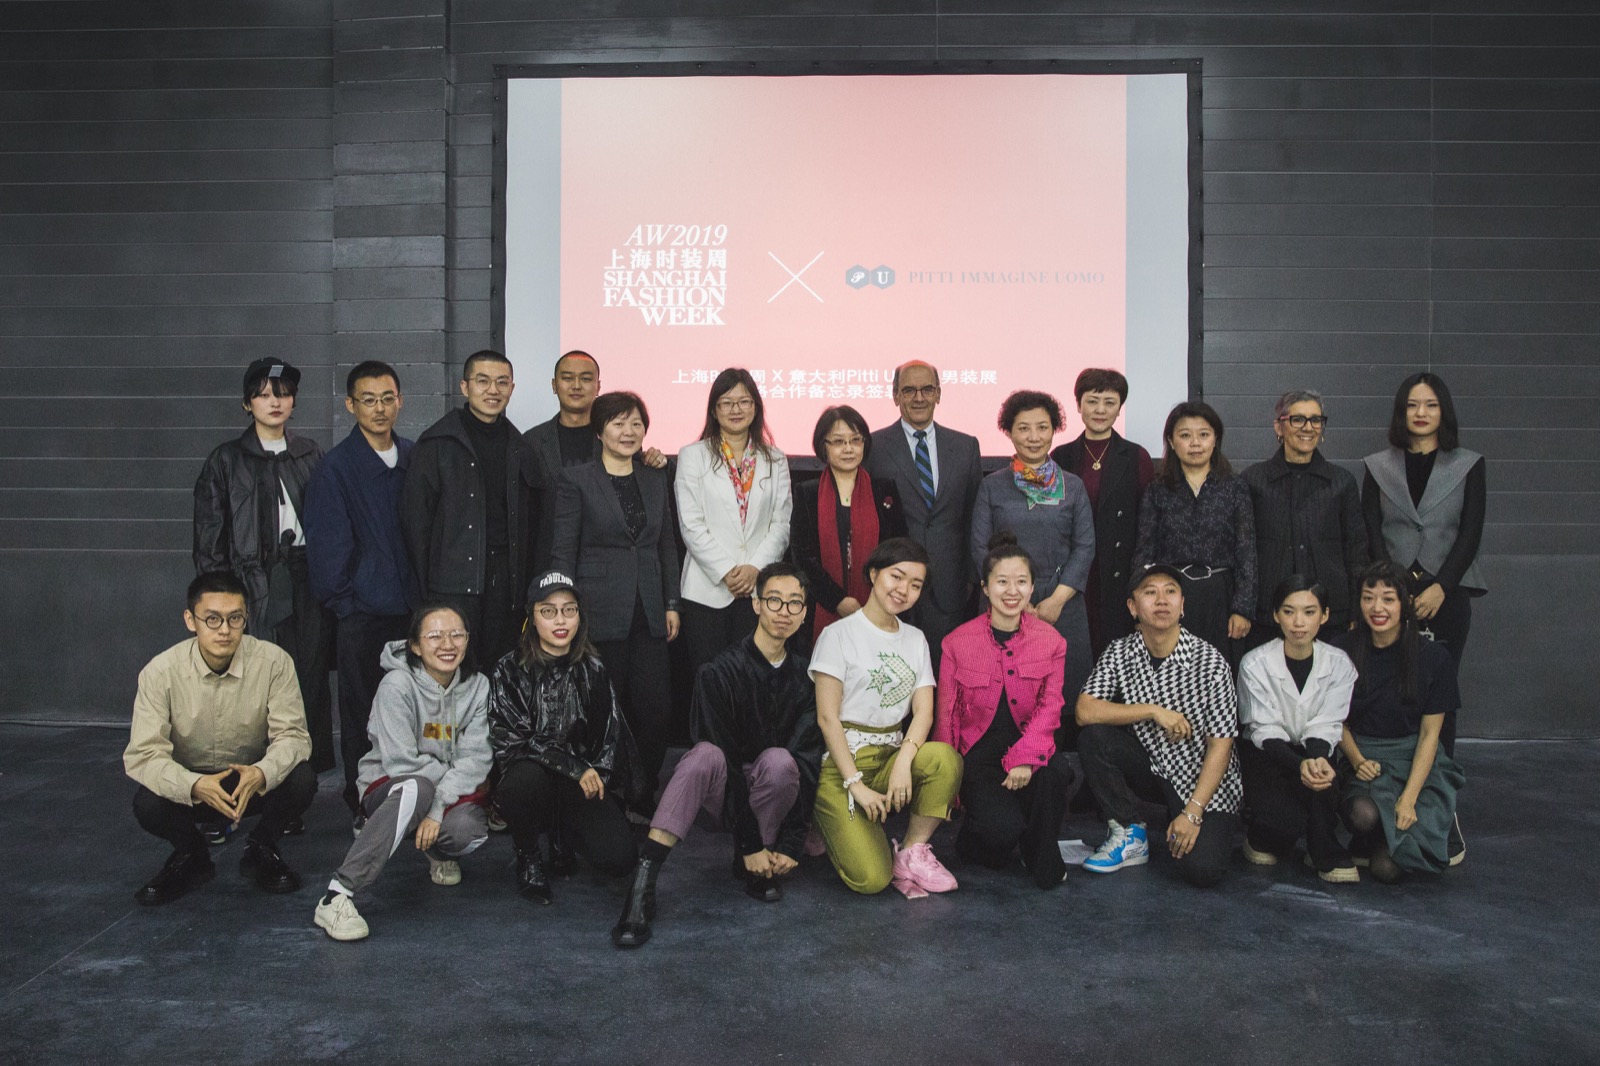 Pitti Immagine 发掘基⾦会和上海时装周共同呈献  第 96 届 Pitti Uomo - GUEST NATION CHINA 中国嘉宾国项目